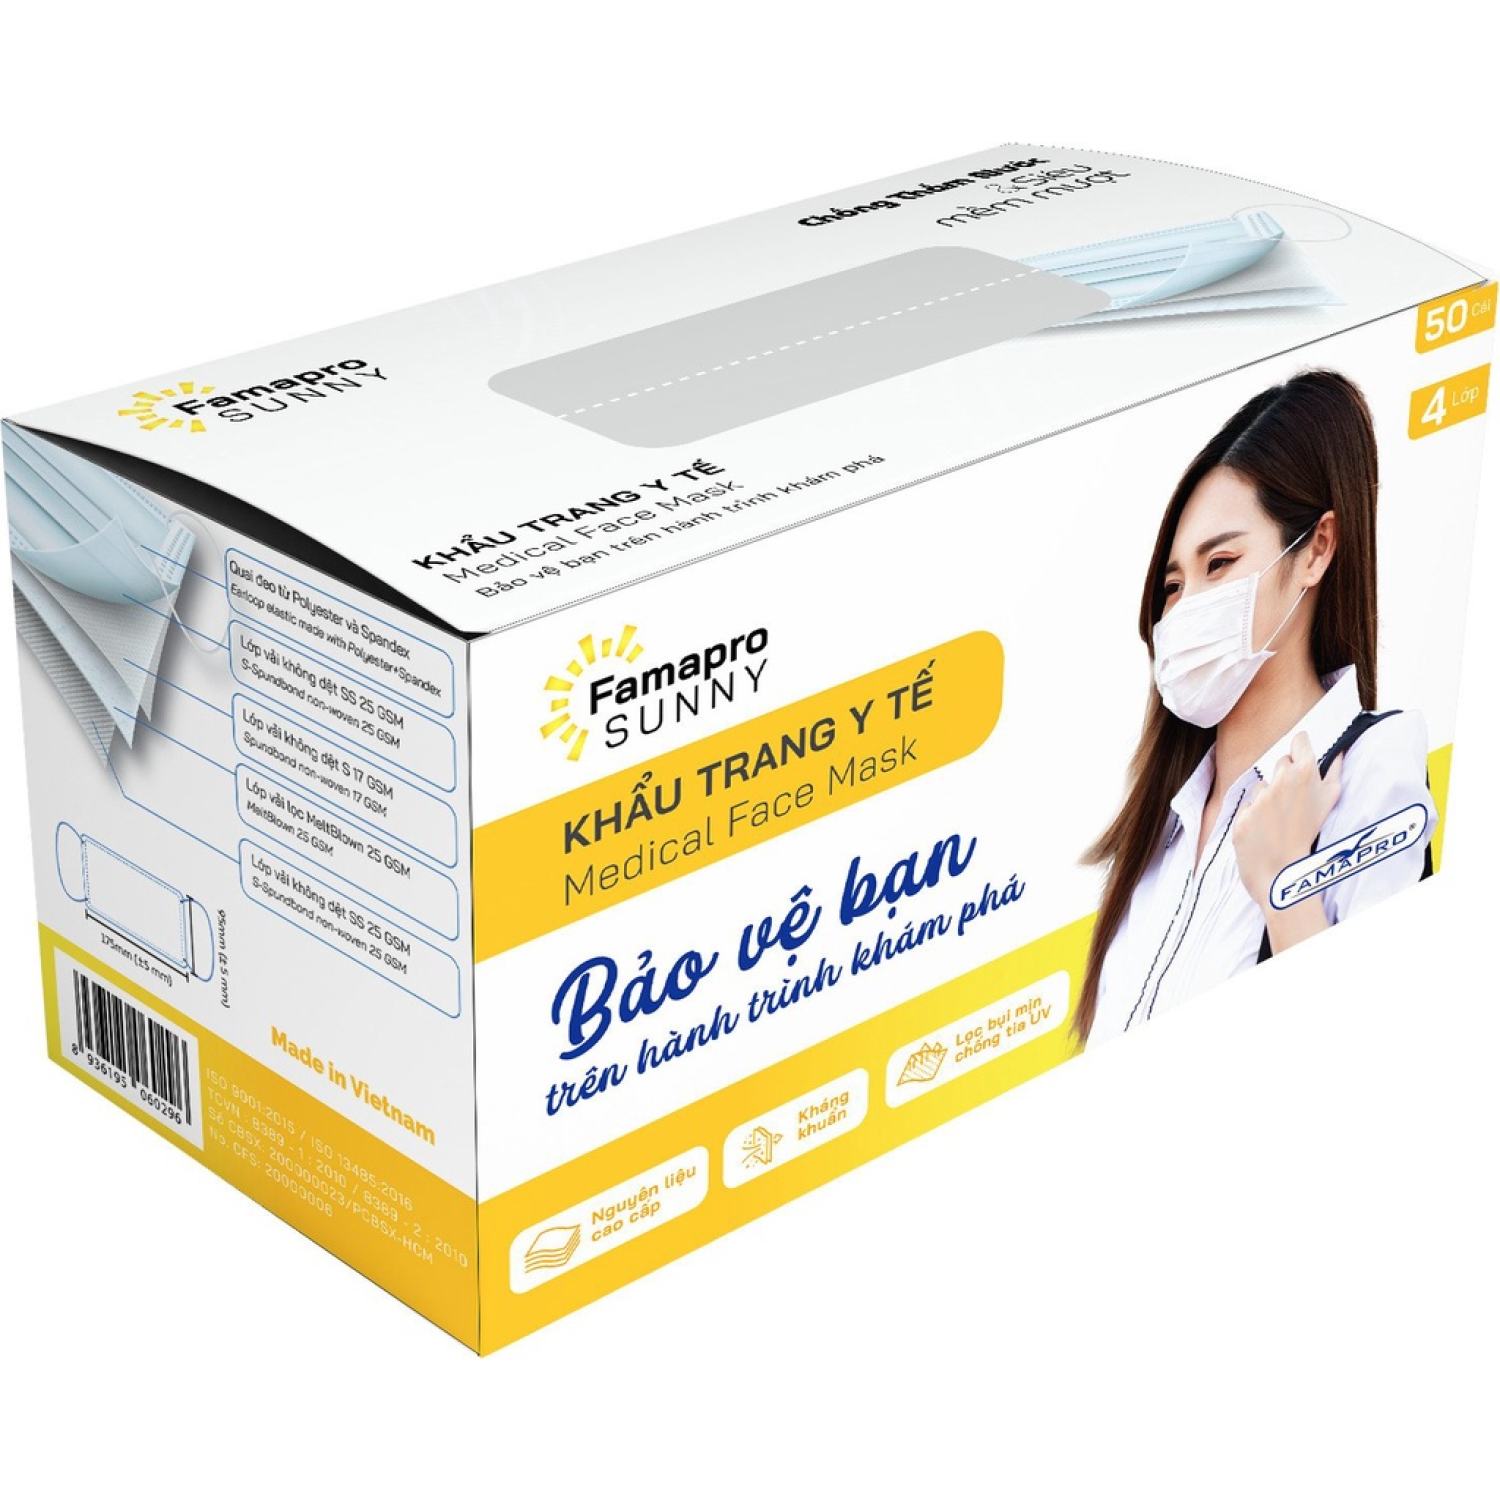 [Chính hãng] Khẩu trang y tế kháng khuẩn 4 lớp, N95 , 4D Famapro